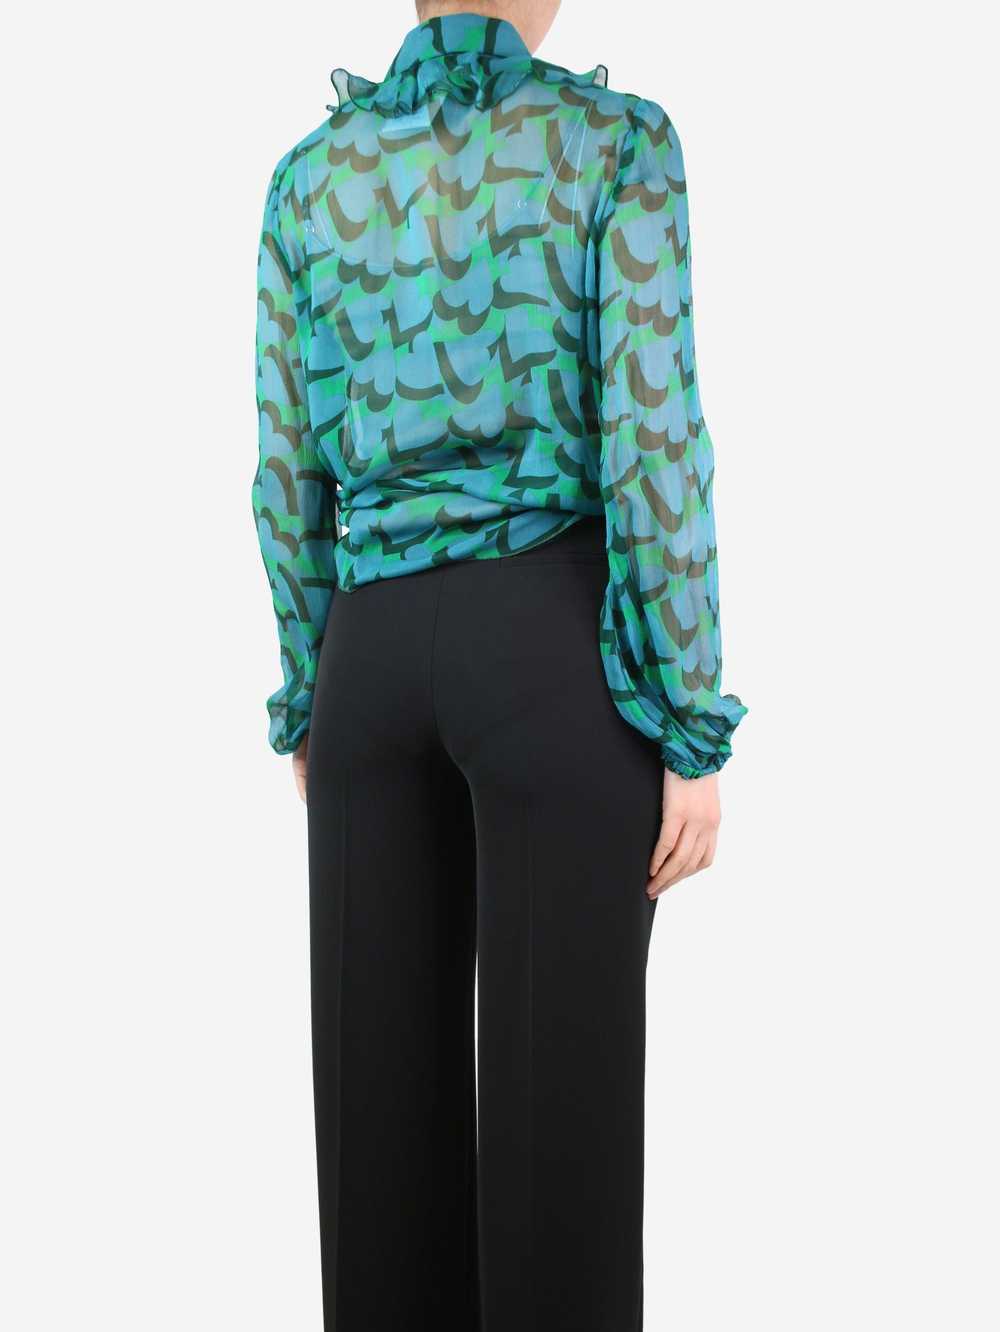 Anna Sui Green sheer ruffled printed blouse - siz… - image 2